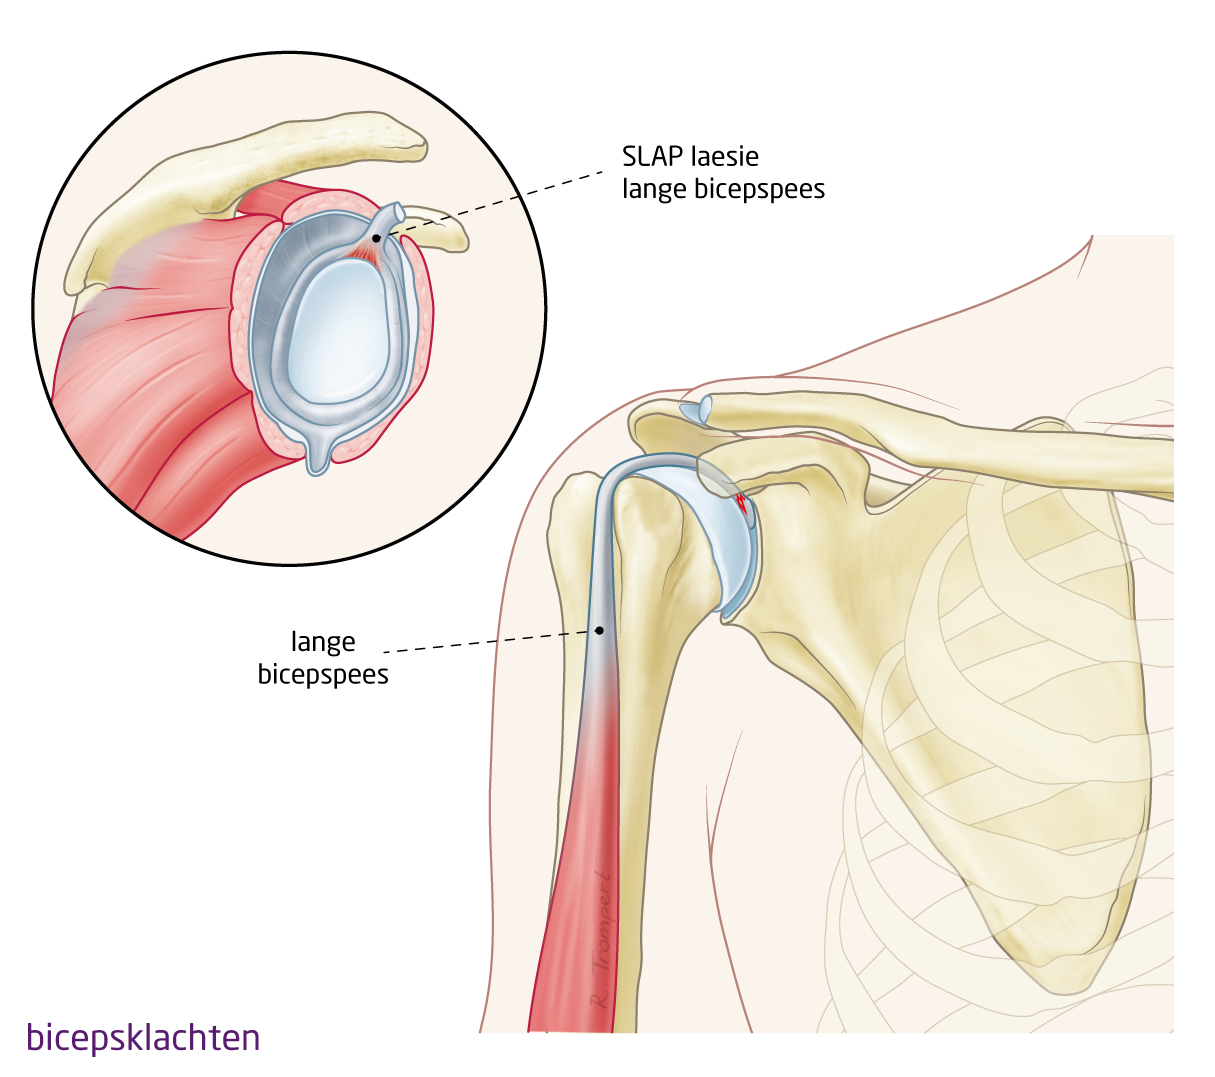 OCON - Aandoening: Bicepsklachten (tendinitis, scheur,